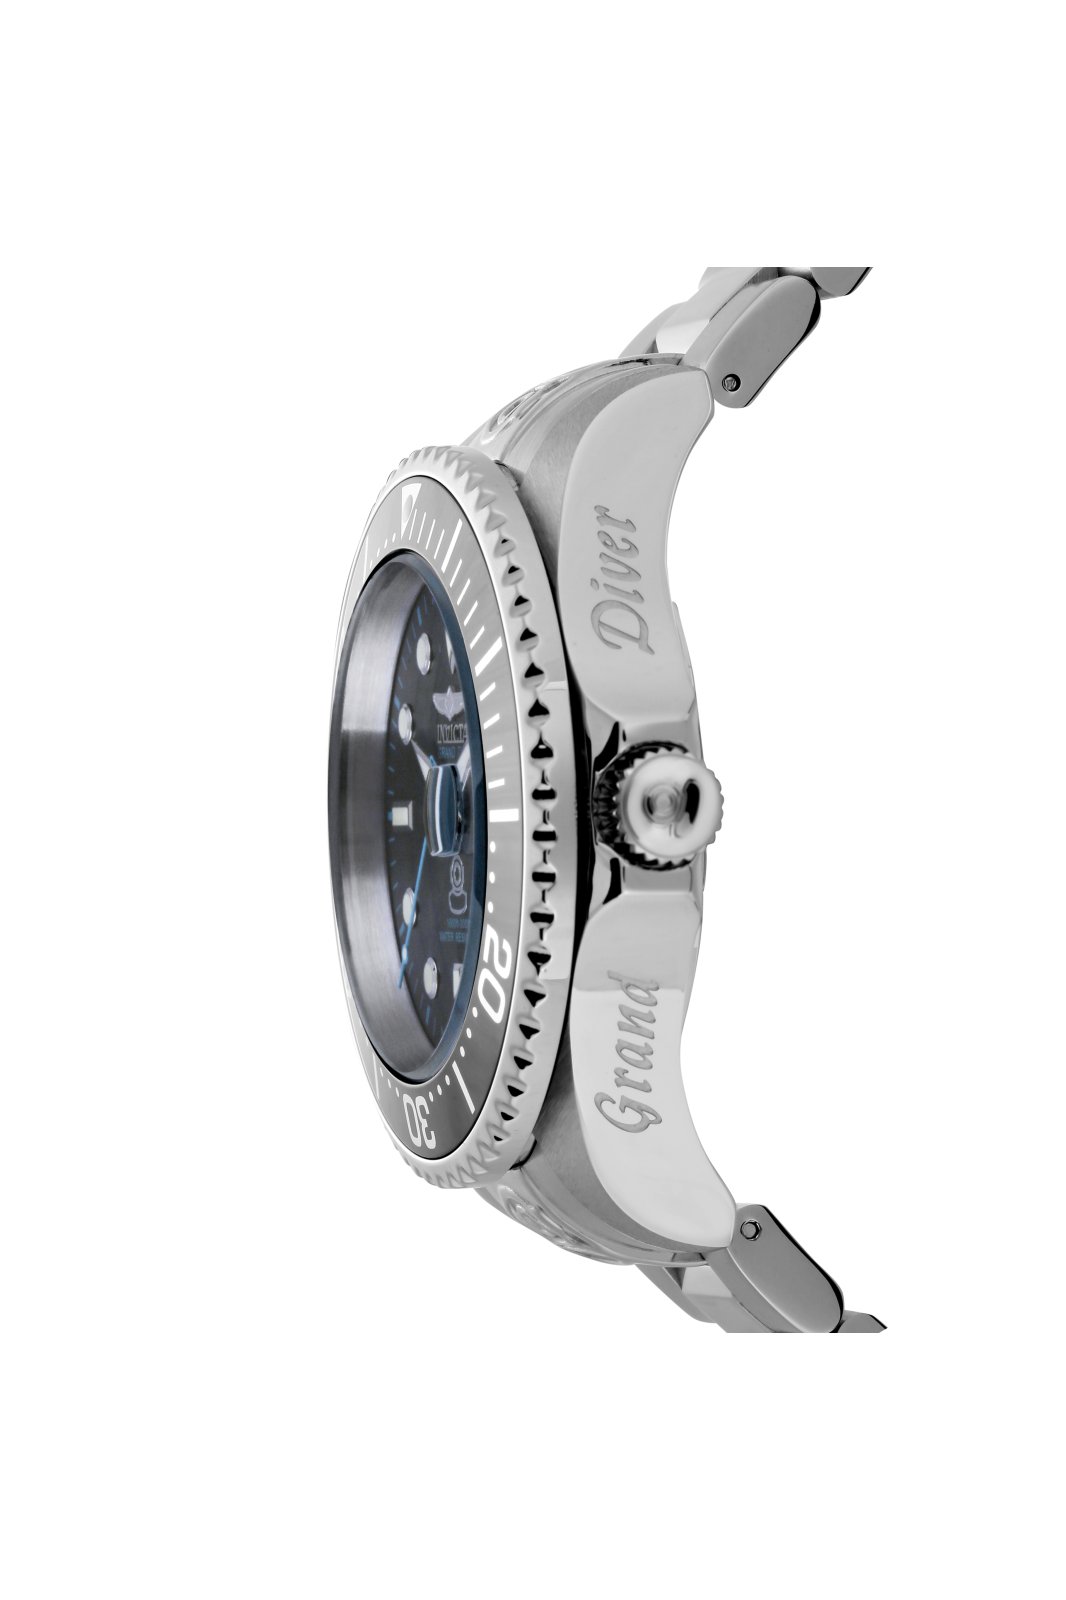 Invicta Grand Diver  Men's Automatic Watch   mm